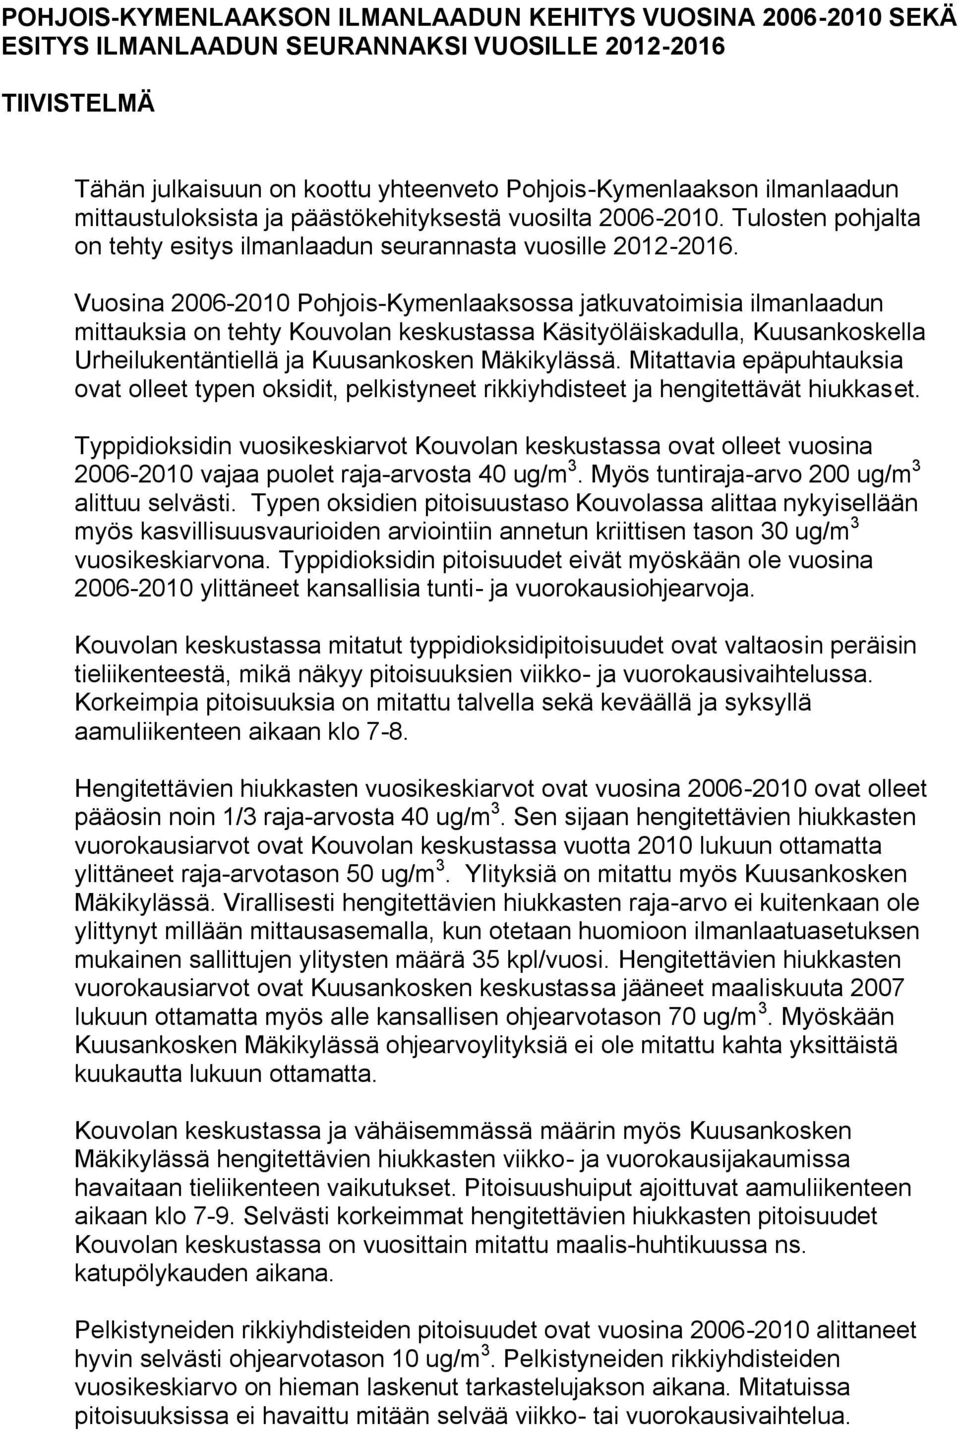 Vuosina 2006-2010 Pohjois-Kymenlaaksossa jatkuvatoimisia ilmanlaadun mittauksia on tehty Kouvolan keskustassa Käsityöläiskadulla, Kuusankoskella Urheilukentäntiellä ja Kuusankosken Mäkikylässä.